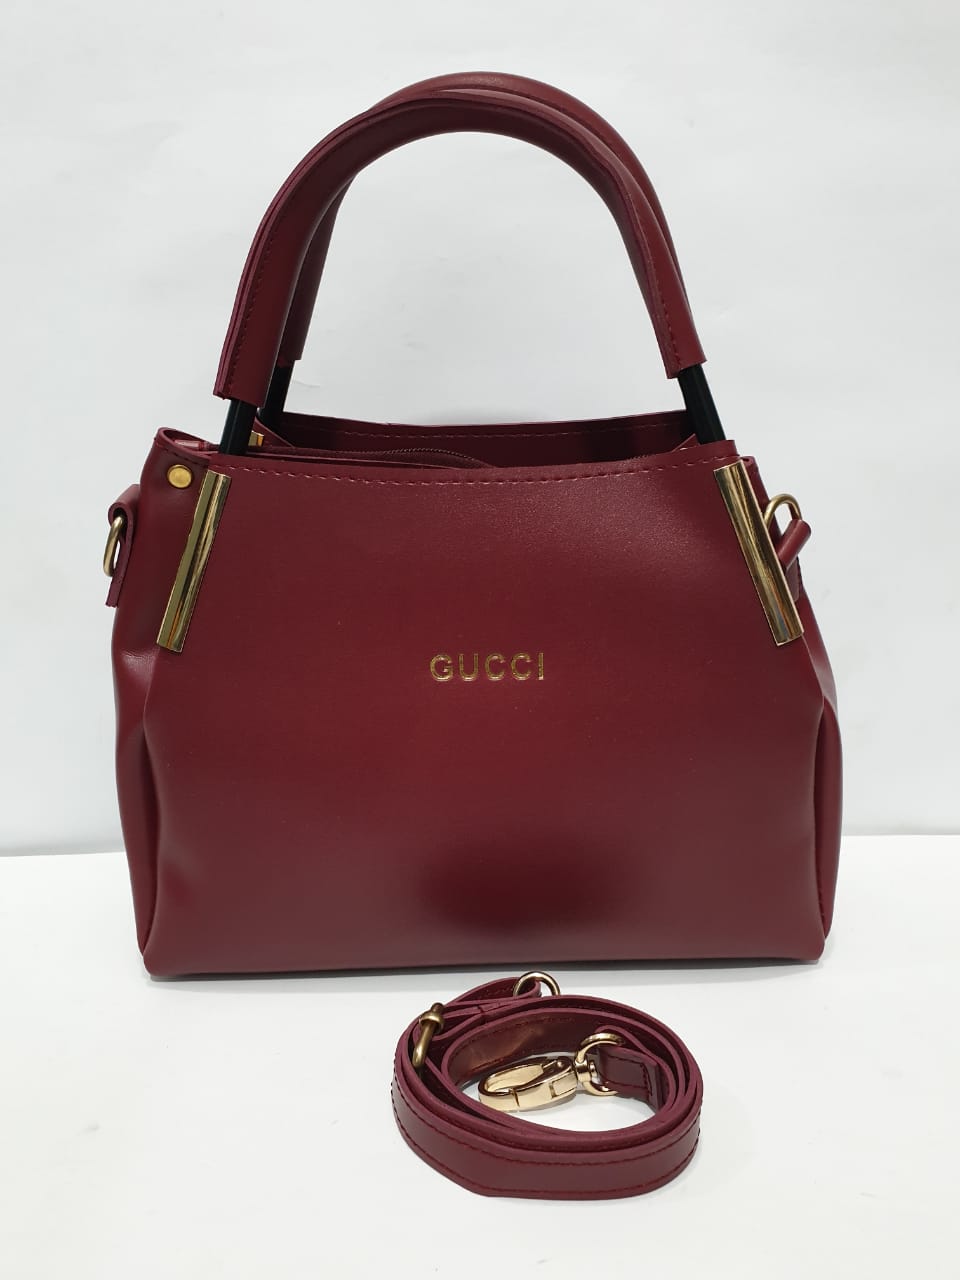 GUCCI Double Handle Ladies handbag – MAROON 3